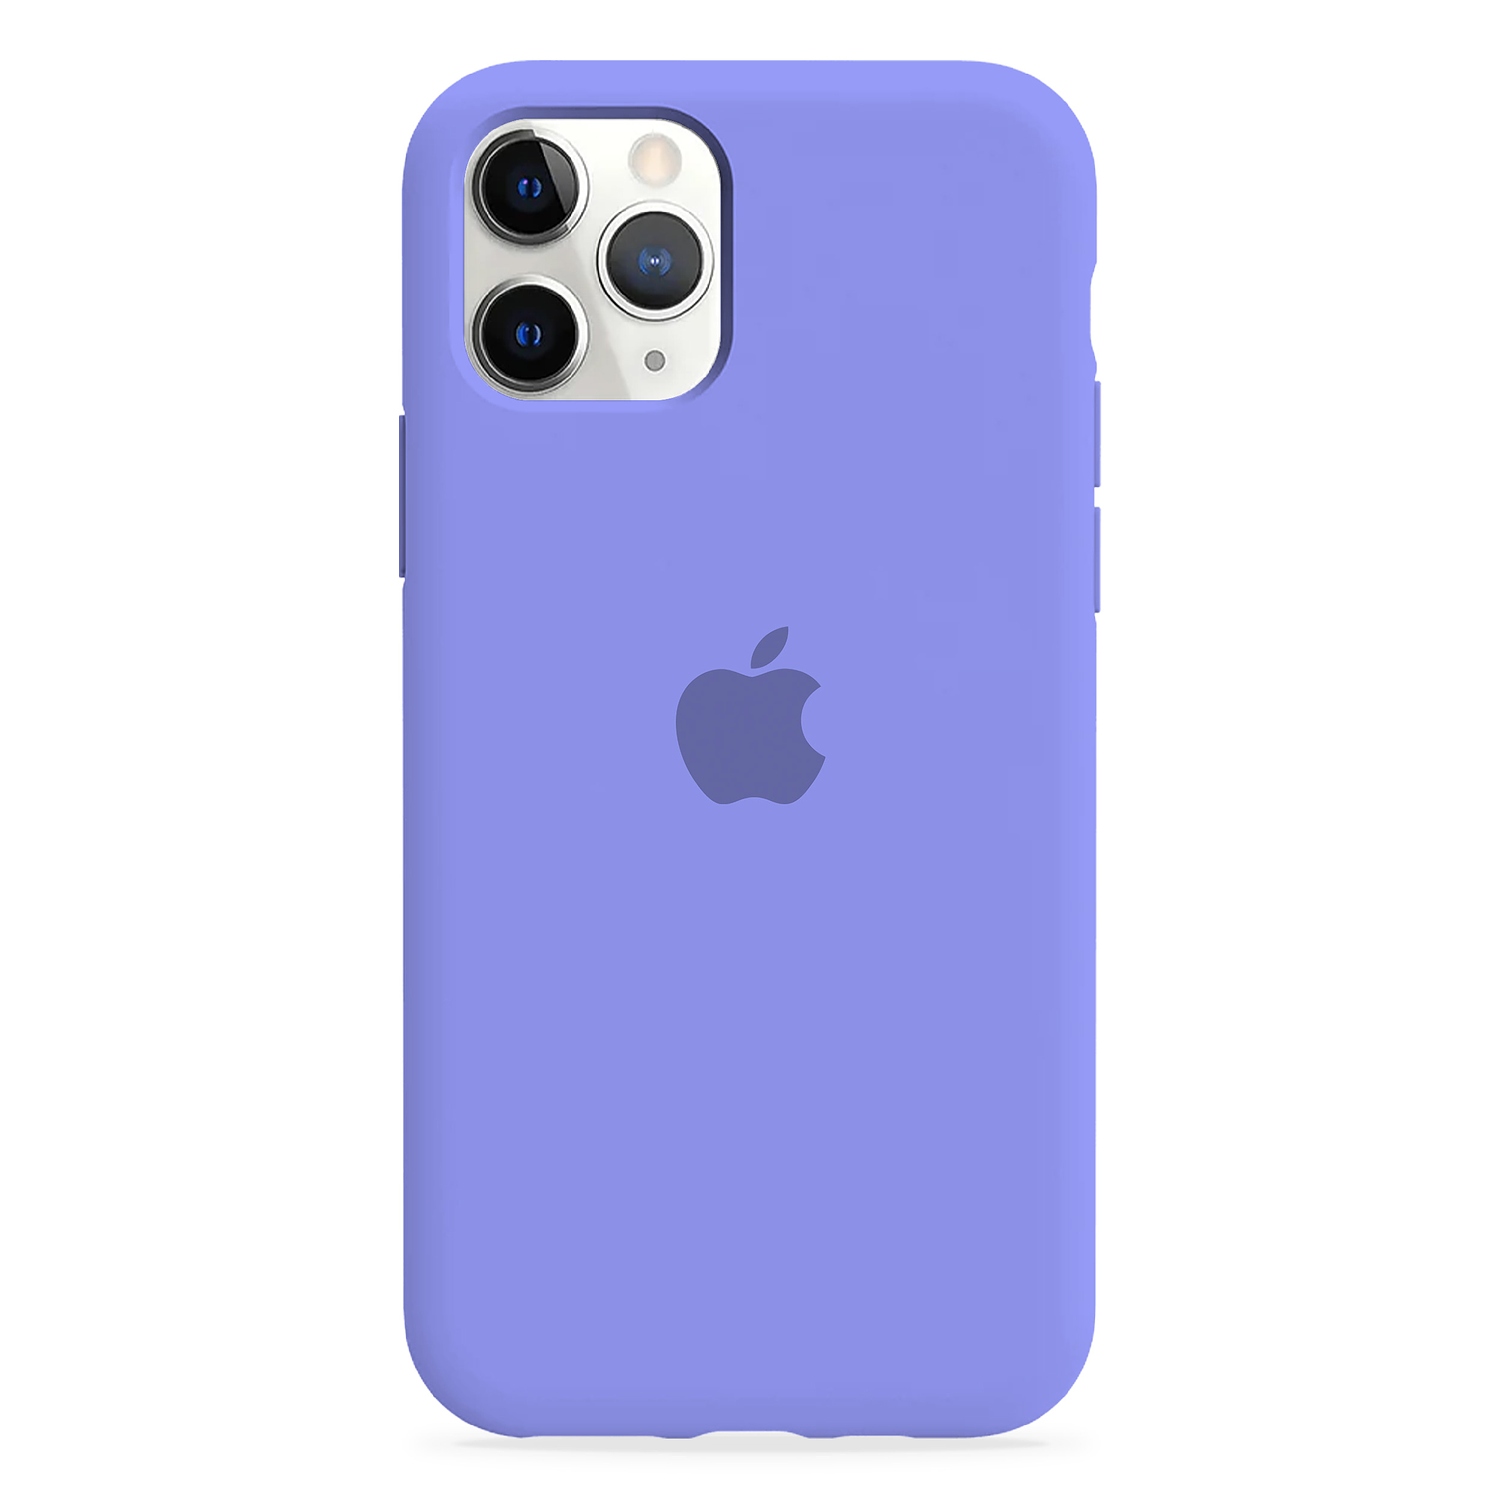 Carcasa de Silicona - iPhone 11 Pro 1